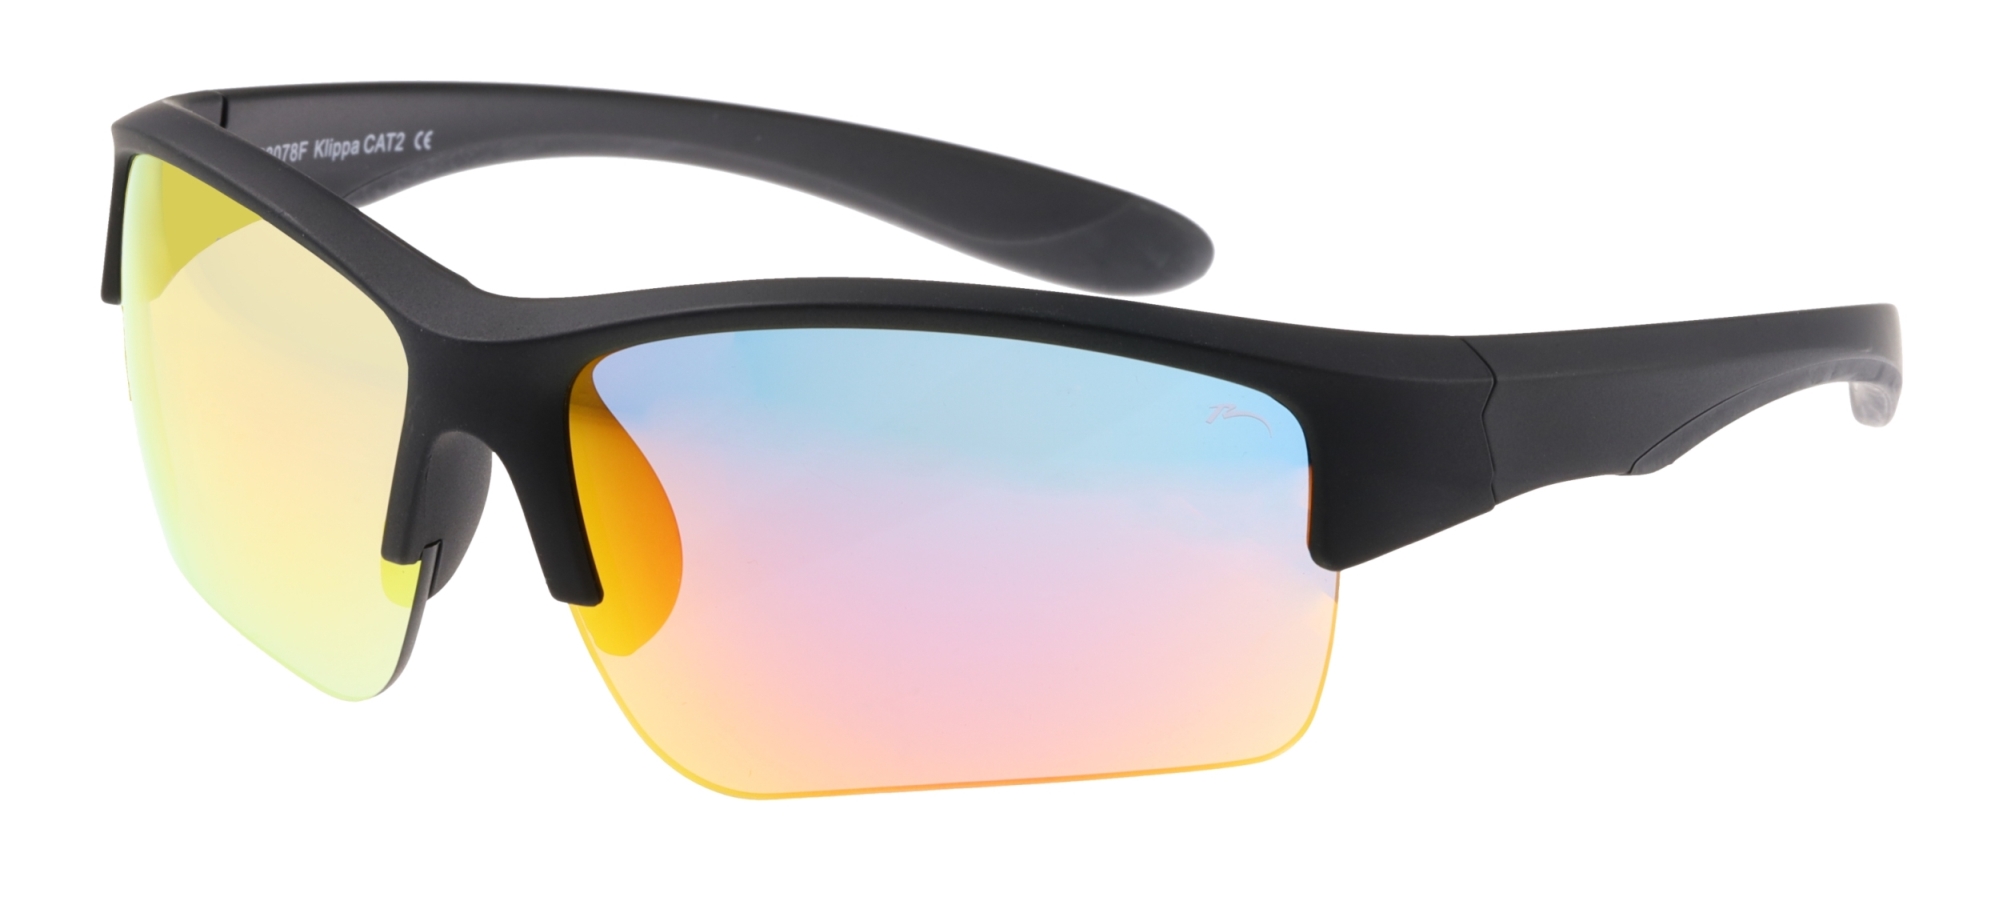 Sunglasses  Relax  Klippa R3078F standard